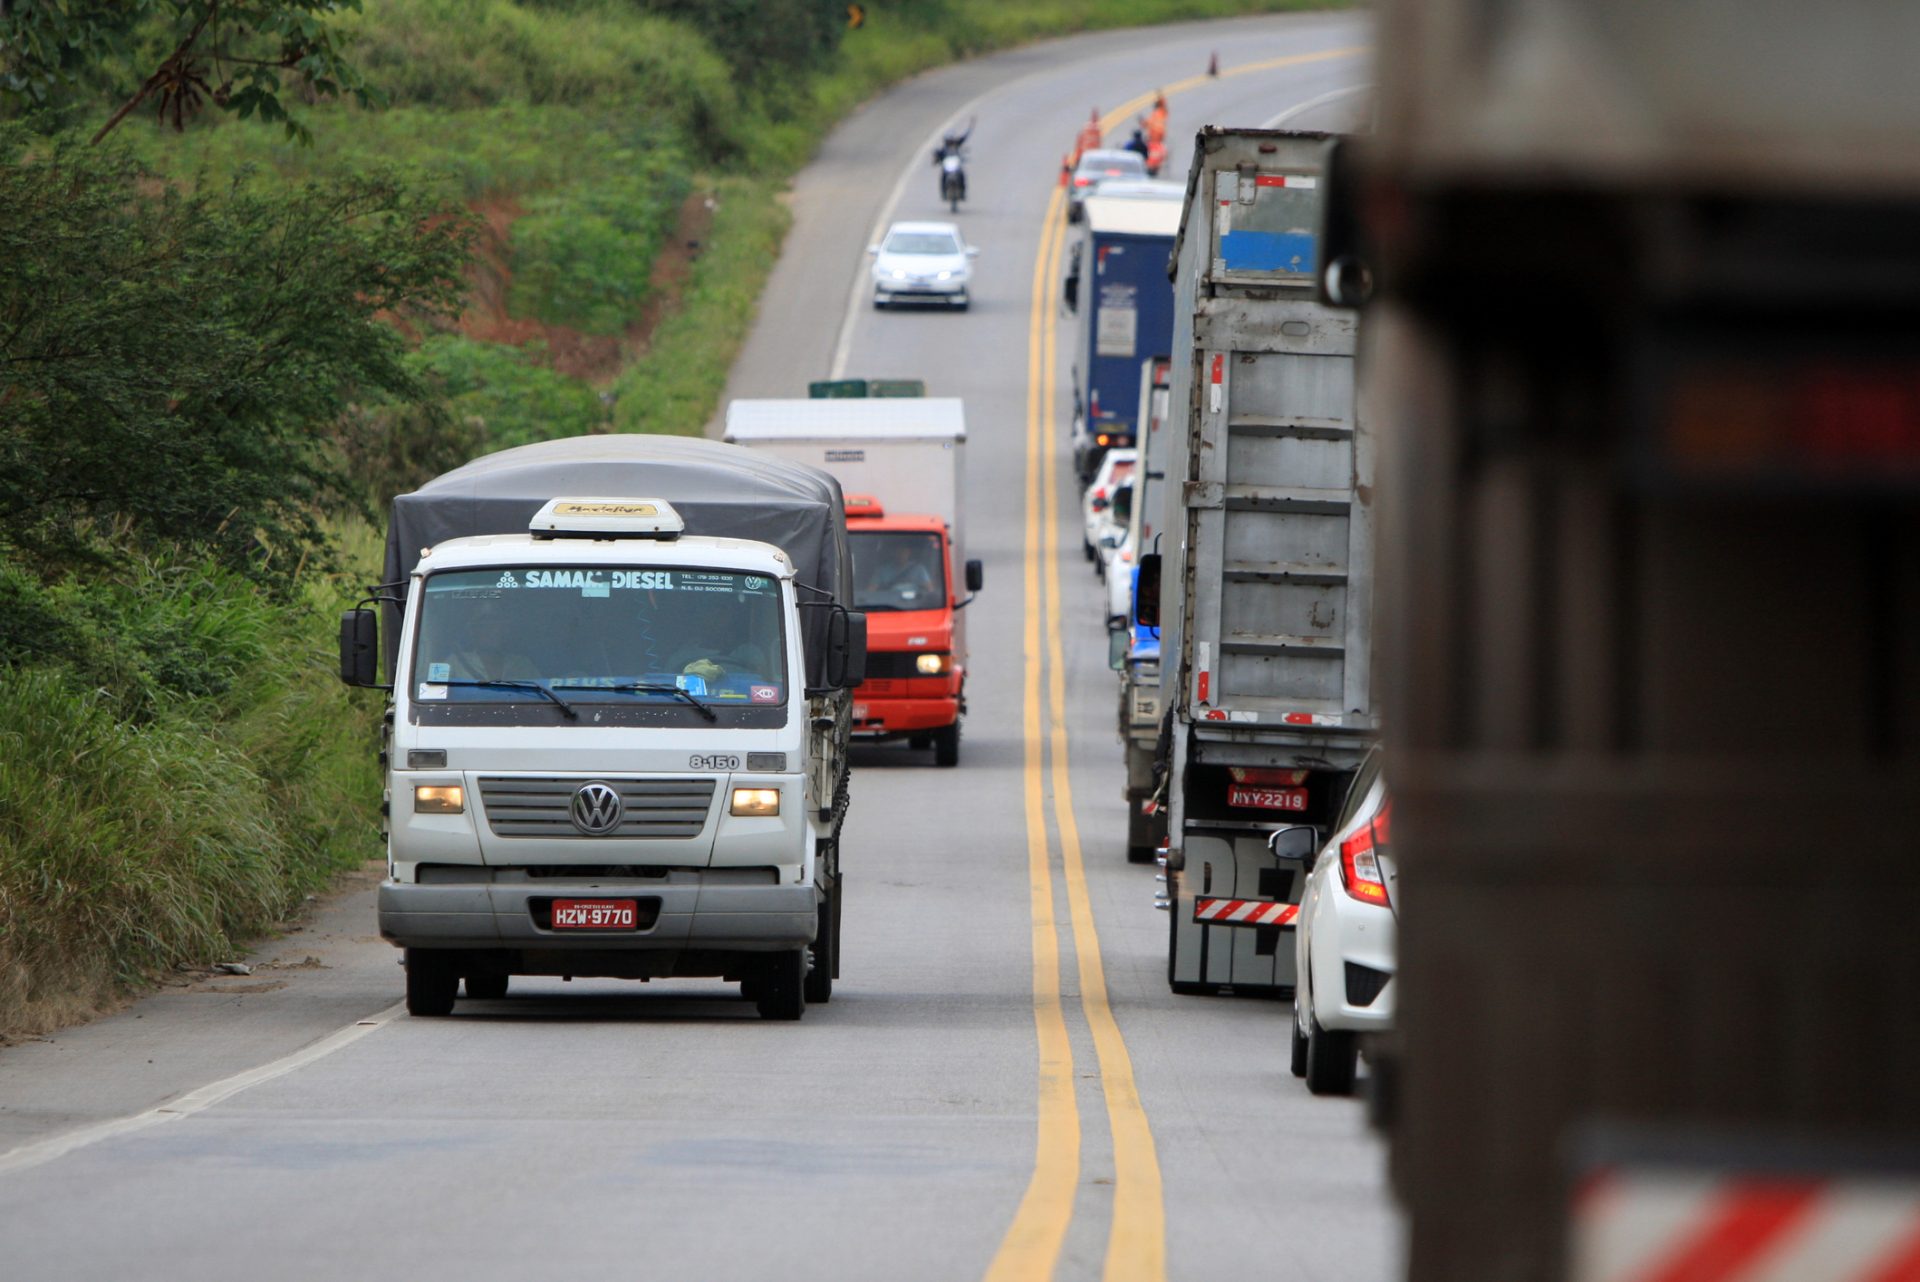 Oito mortos e 23 feridos em acidente com autocarro de turismo no Brasil